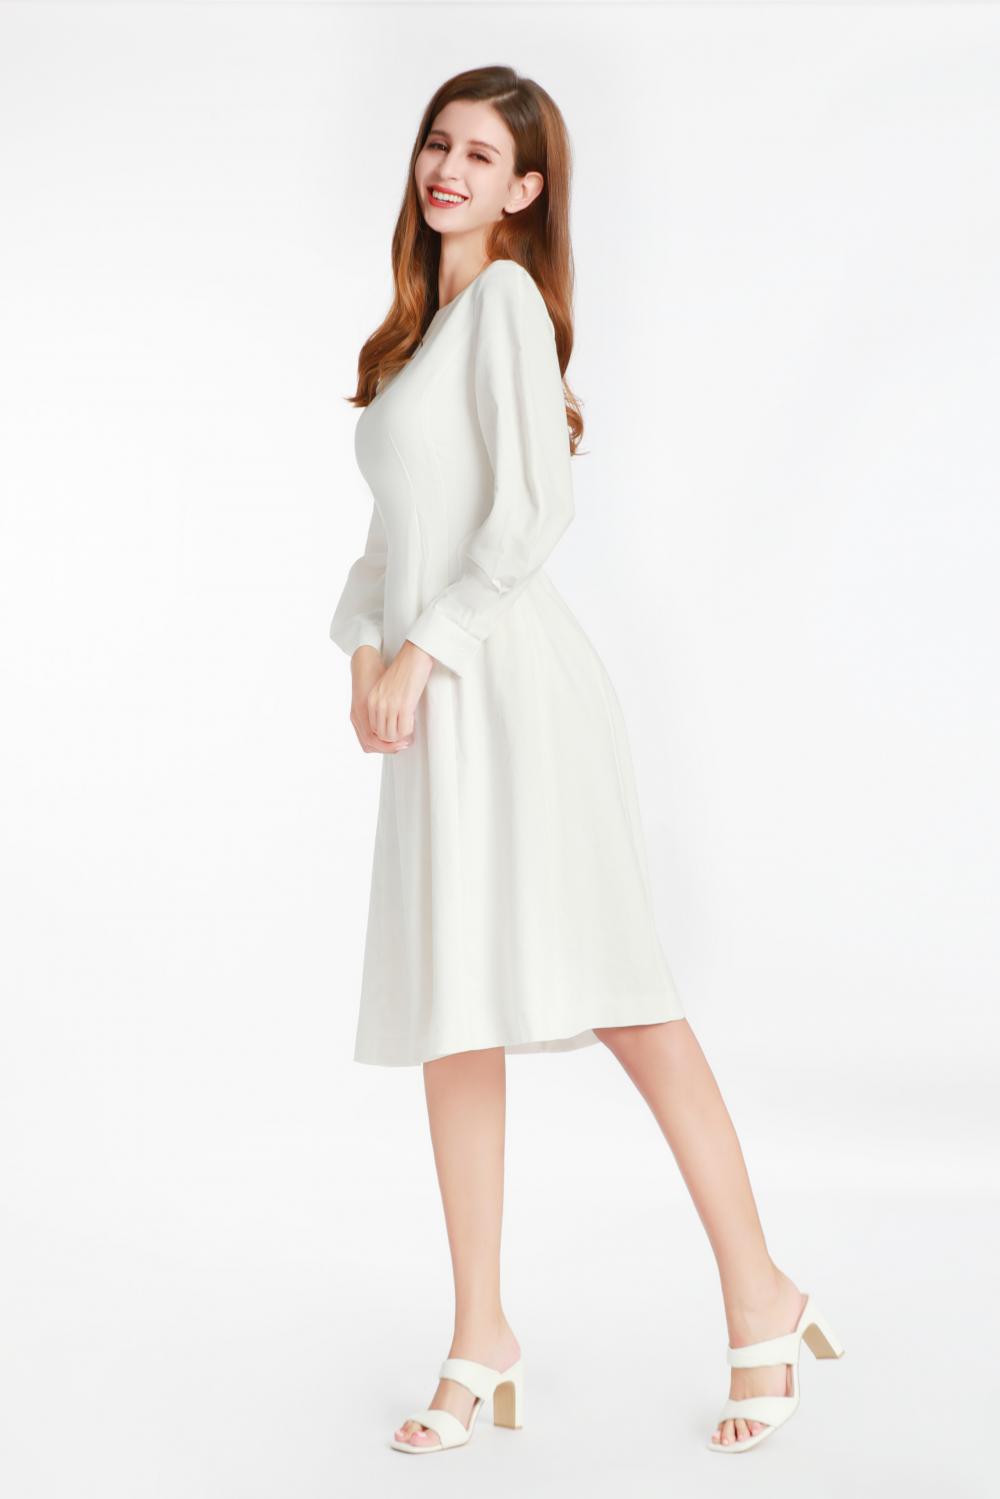 Weißes langärmeliges Kleid mit einem kleinen runden Kragen